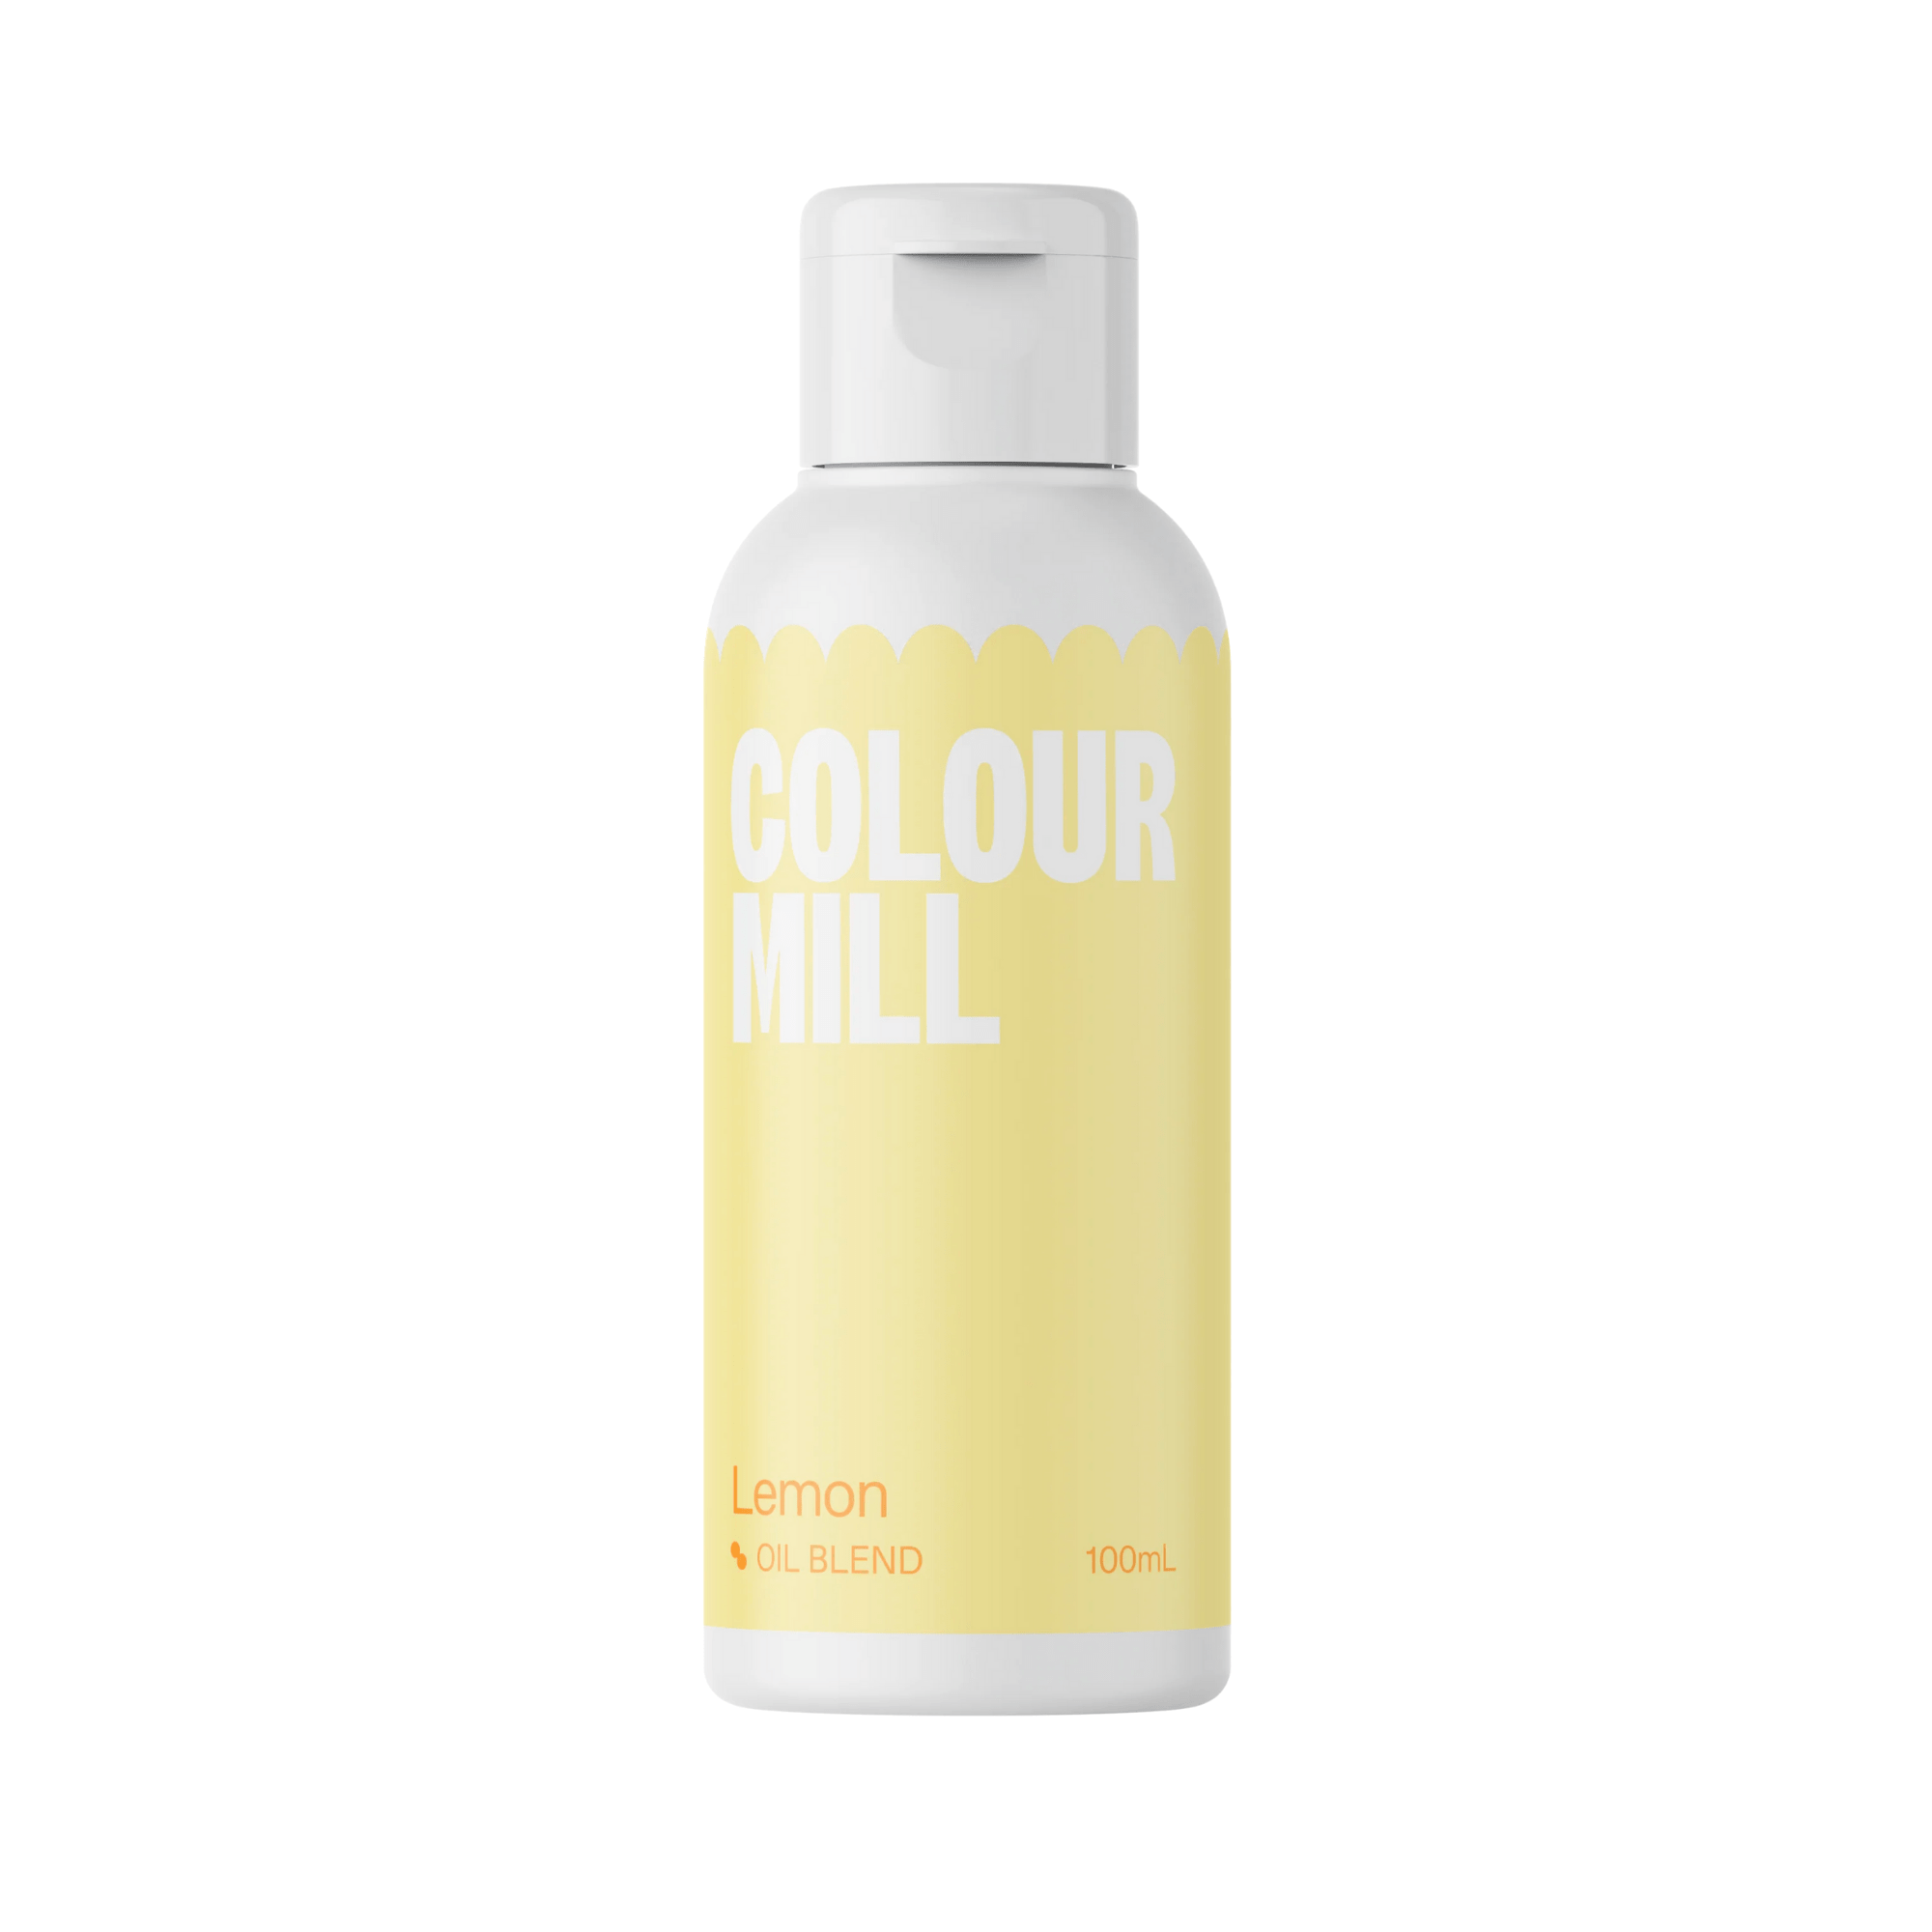 Happy Sprinkles Streusel 100ml Colour Mill Lemon - Oil Blend